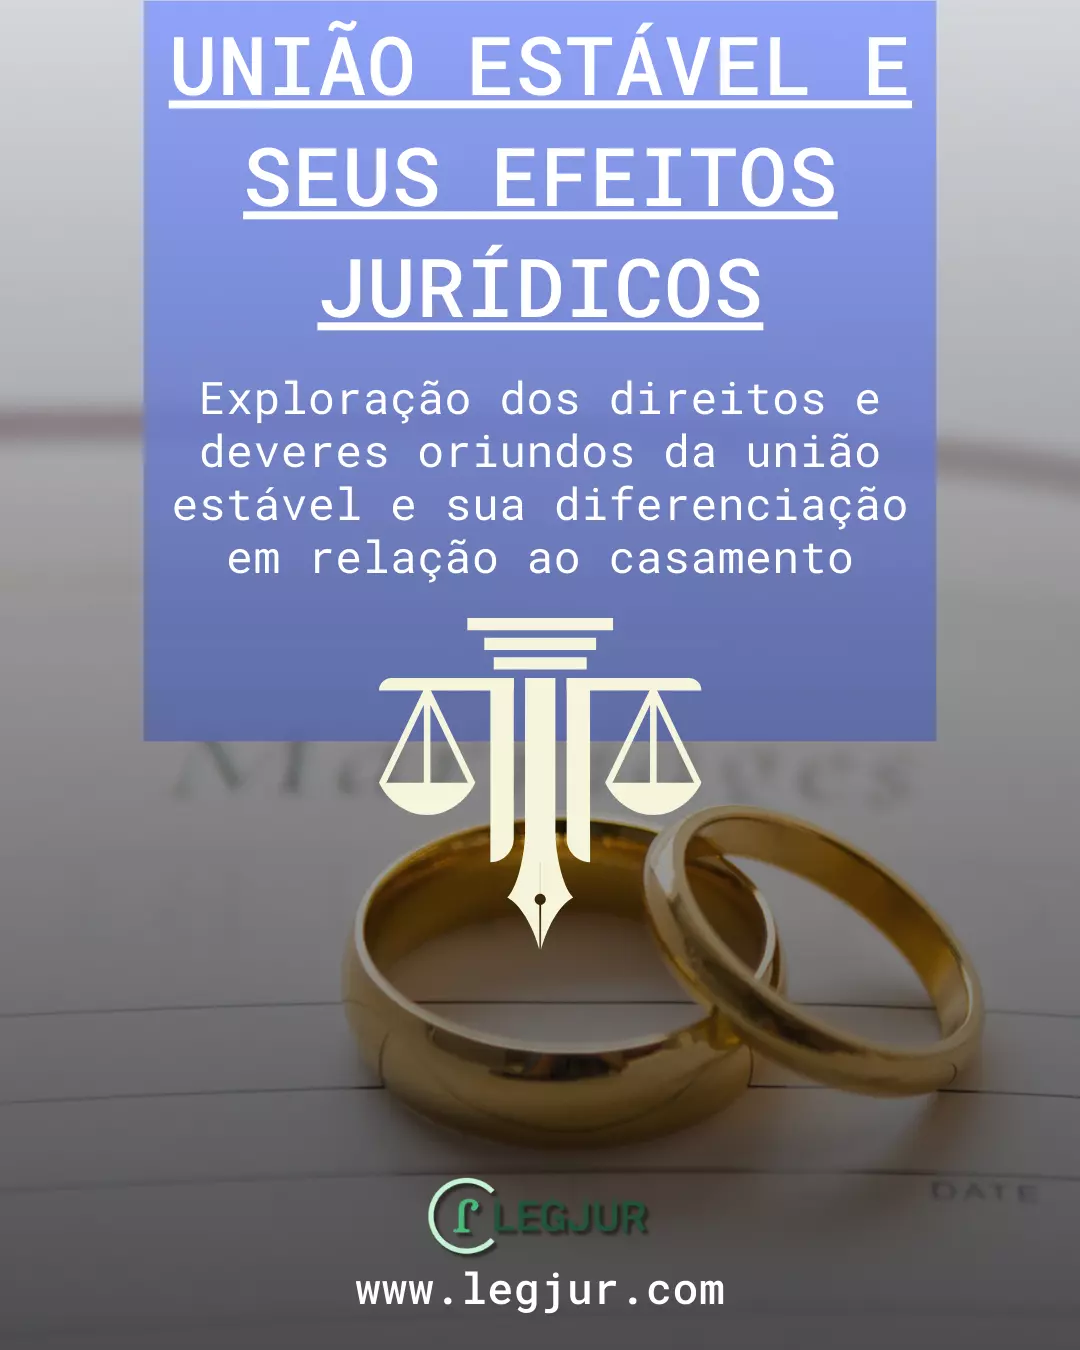 União Estável no Brasil: Direitos, Deveres e Diferenciações em Relação ao Casamento